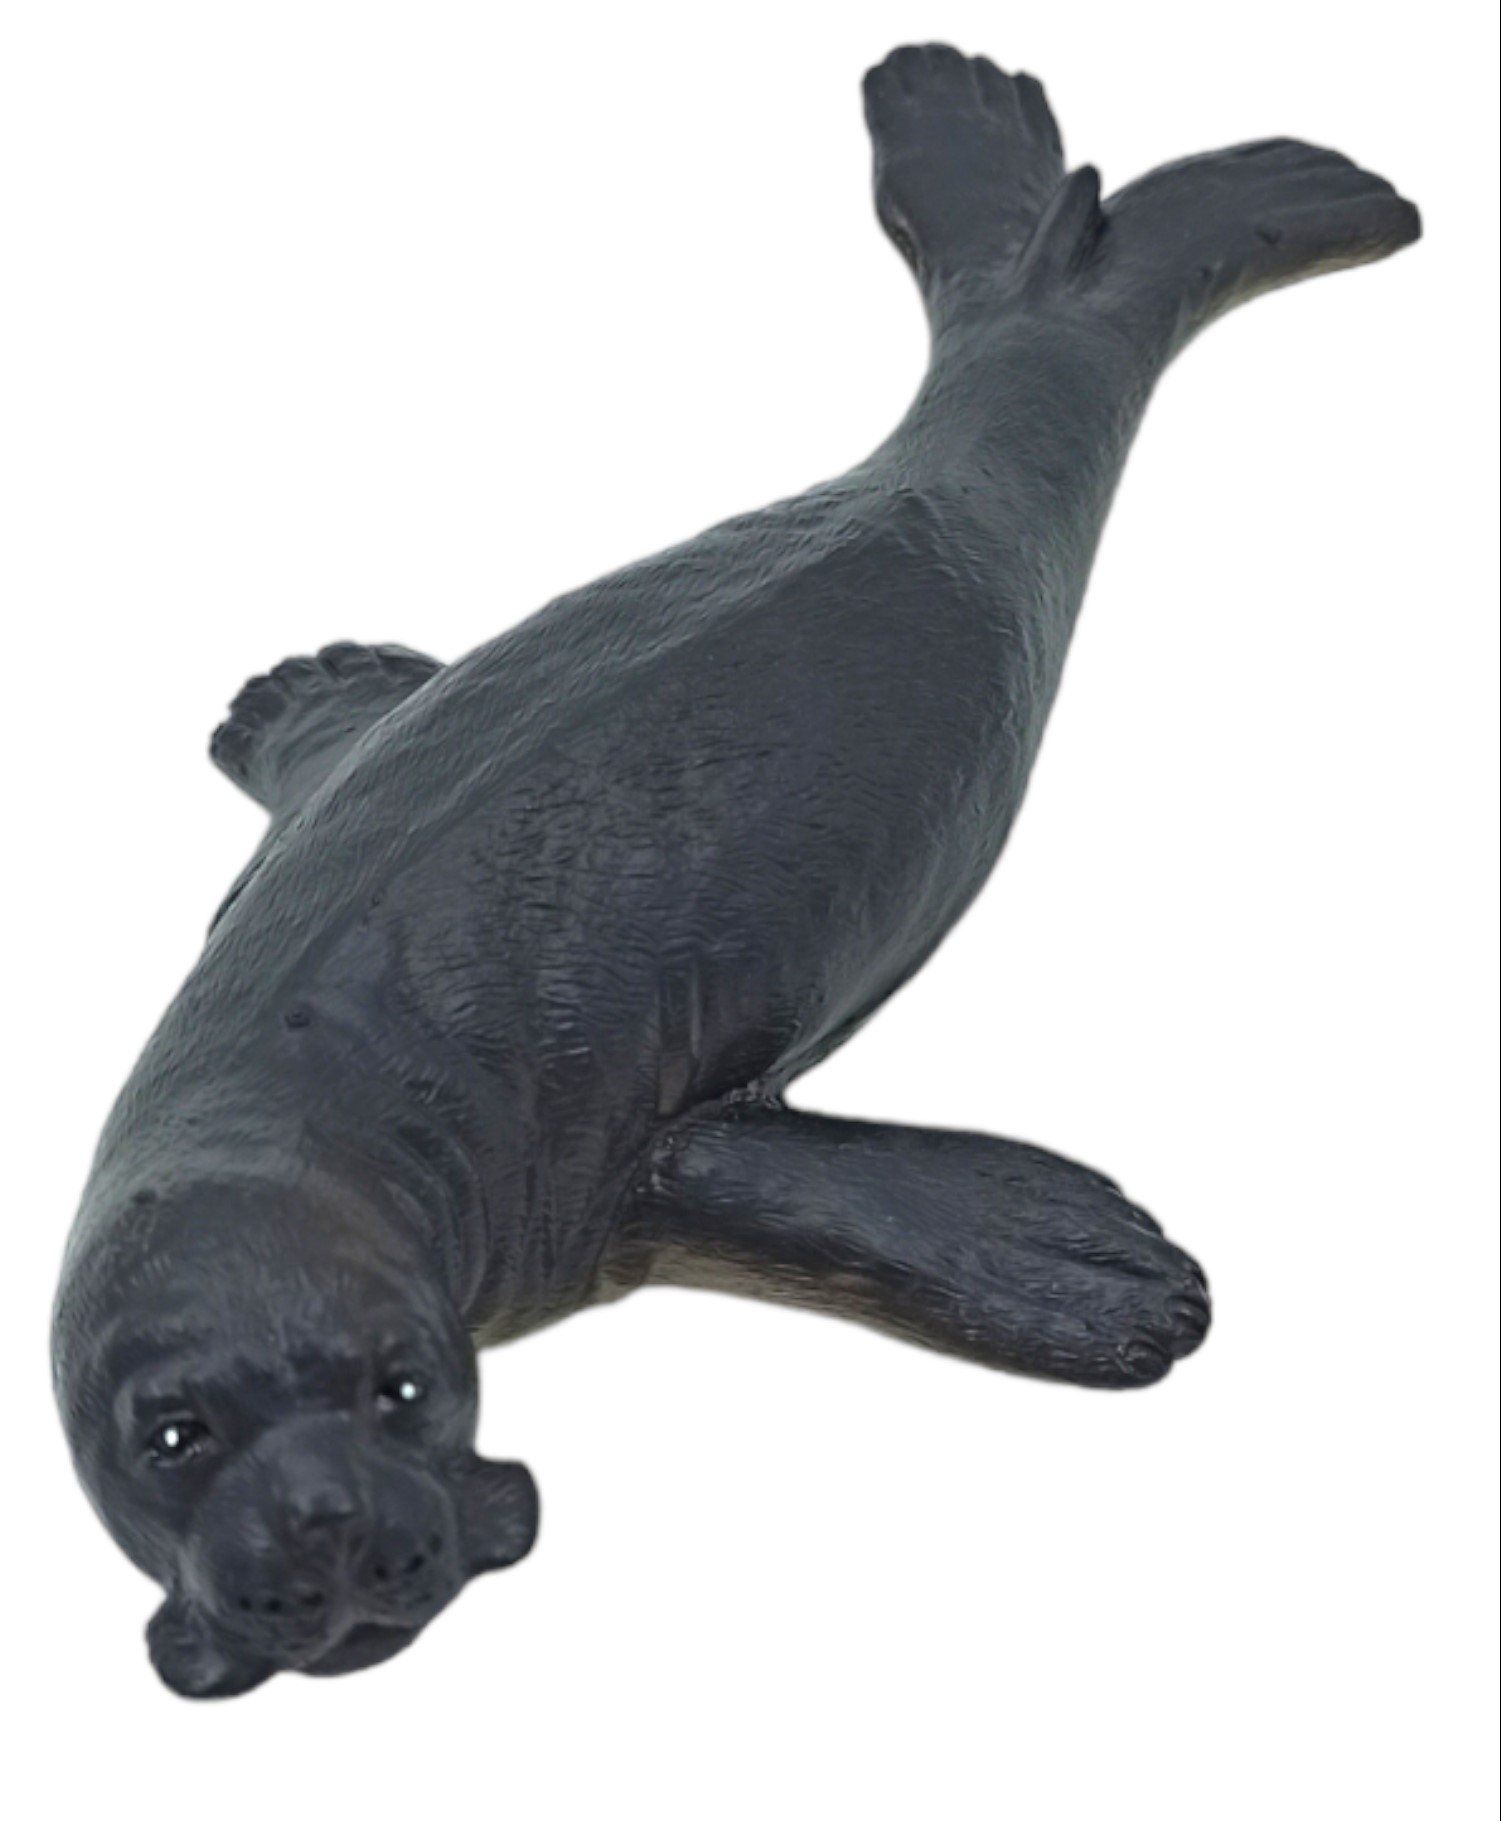 Oyuncak Deniz Canlıları Akdeniz Fok Et Figürü Oyuncak Fok 20cm.